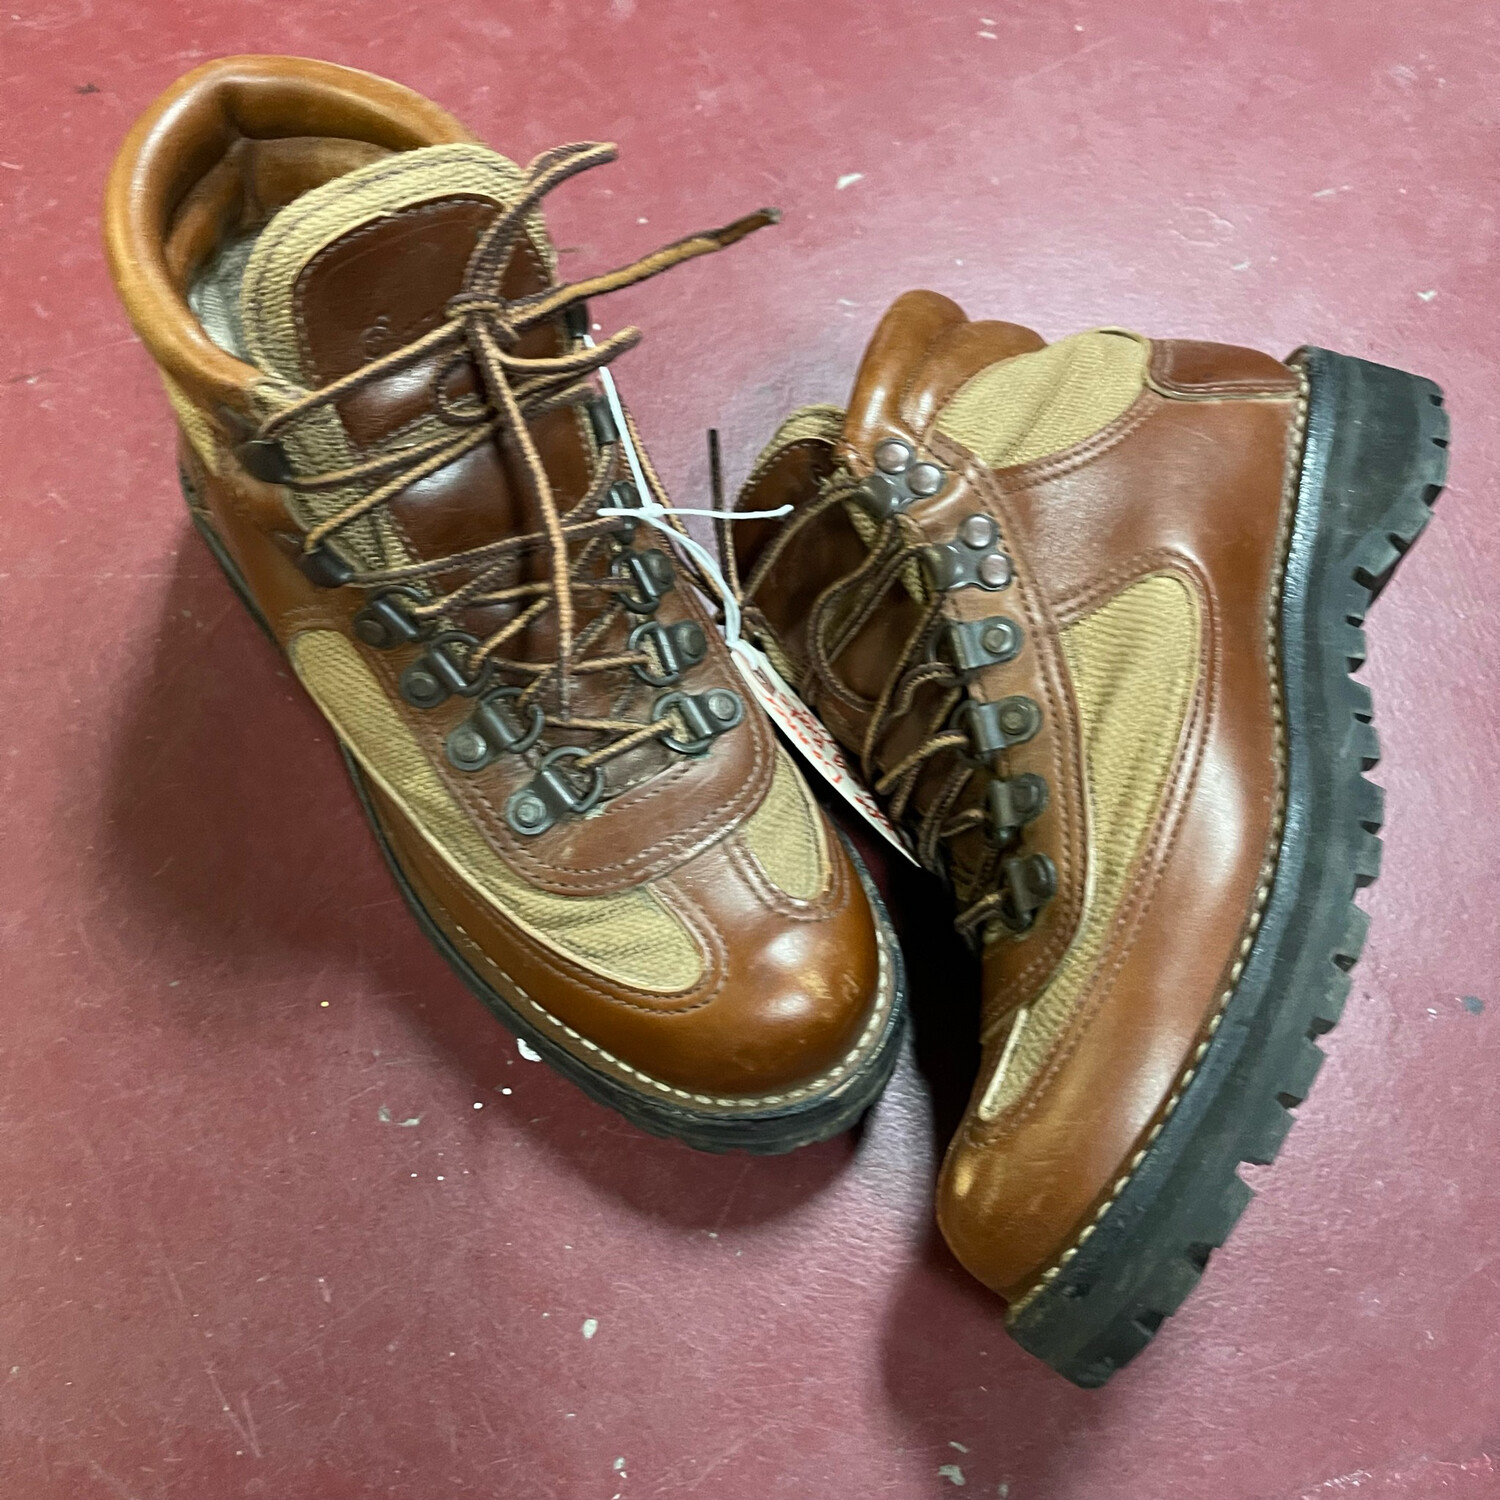 Eddie Bauer Edition Danner Hiking Boots.